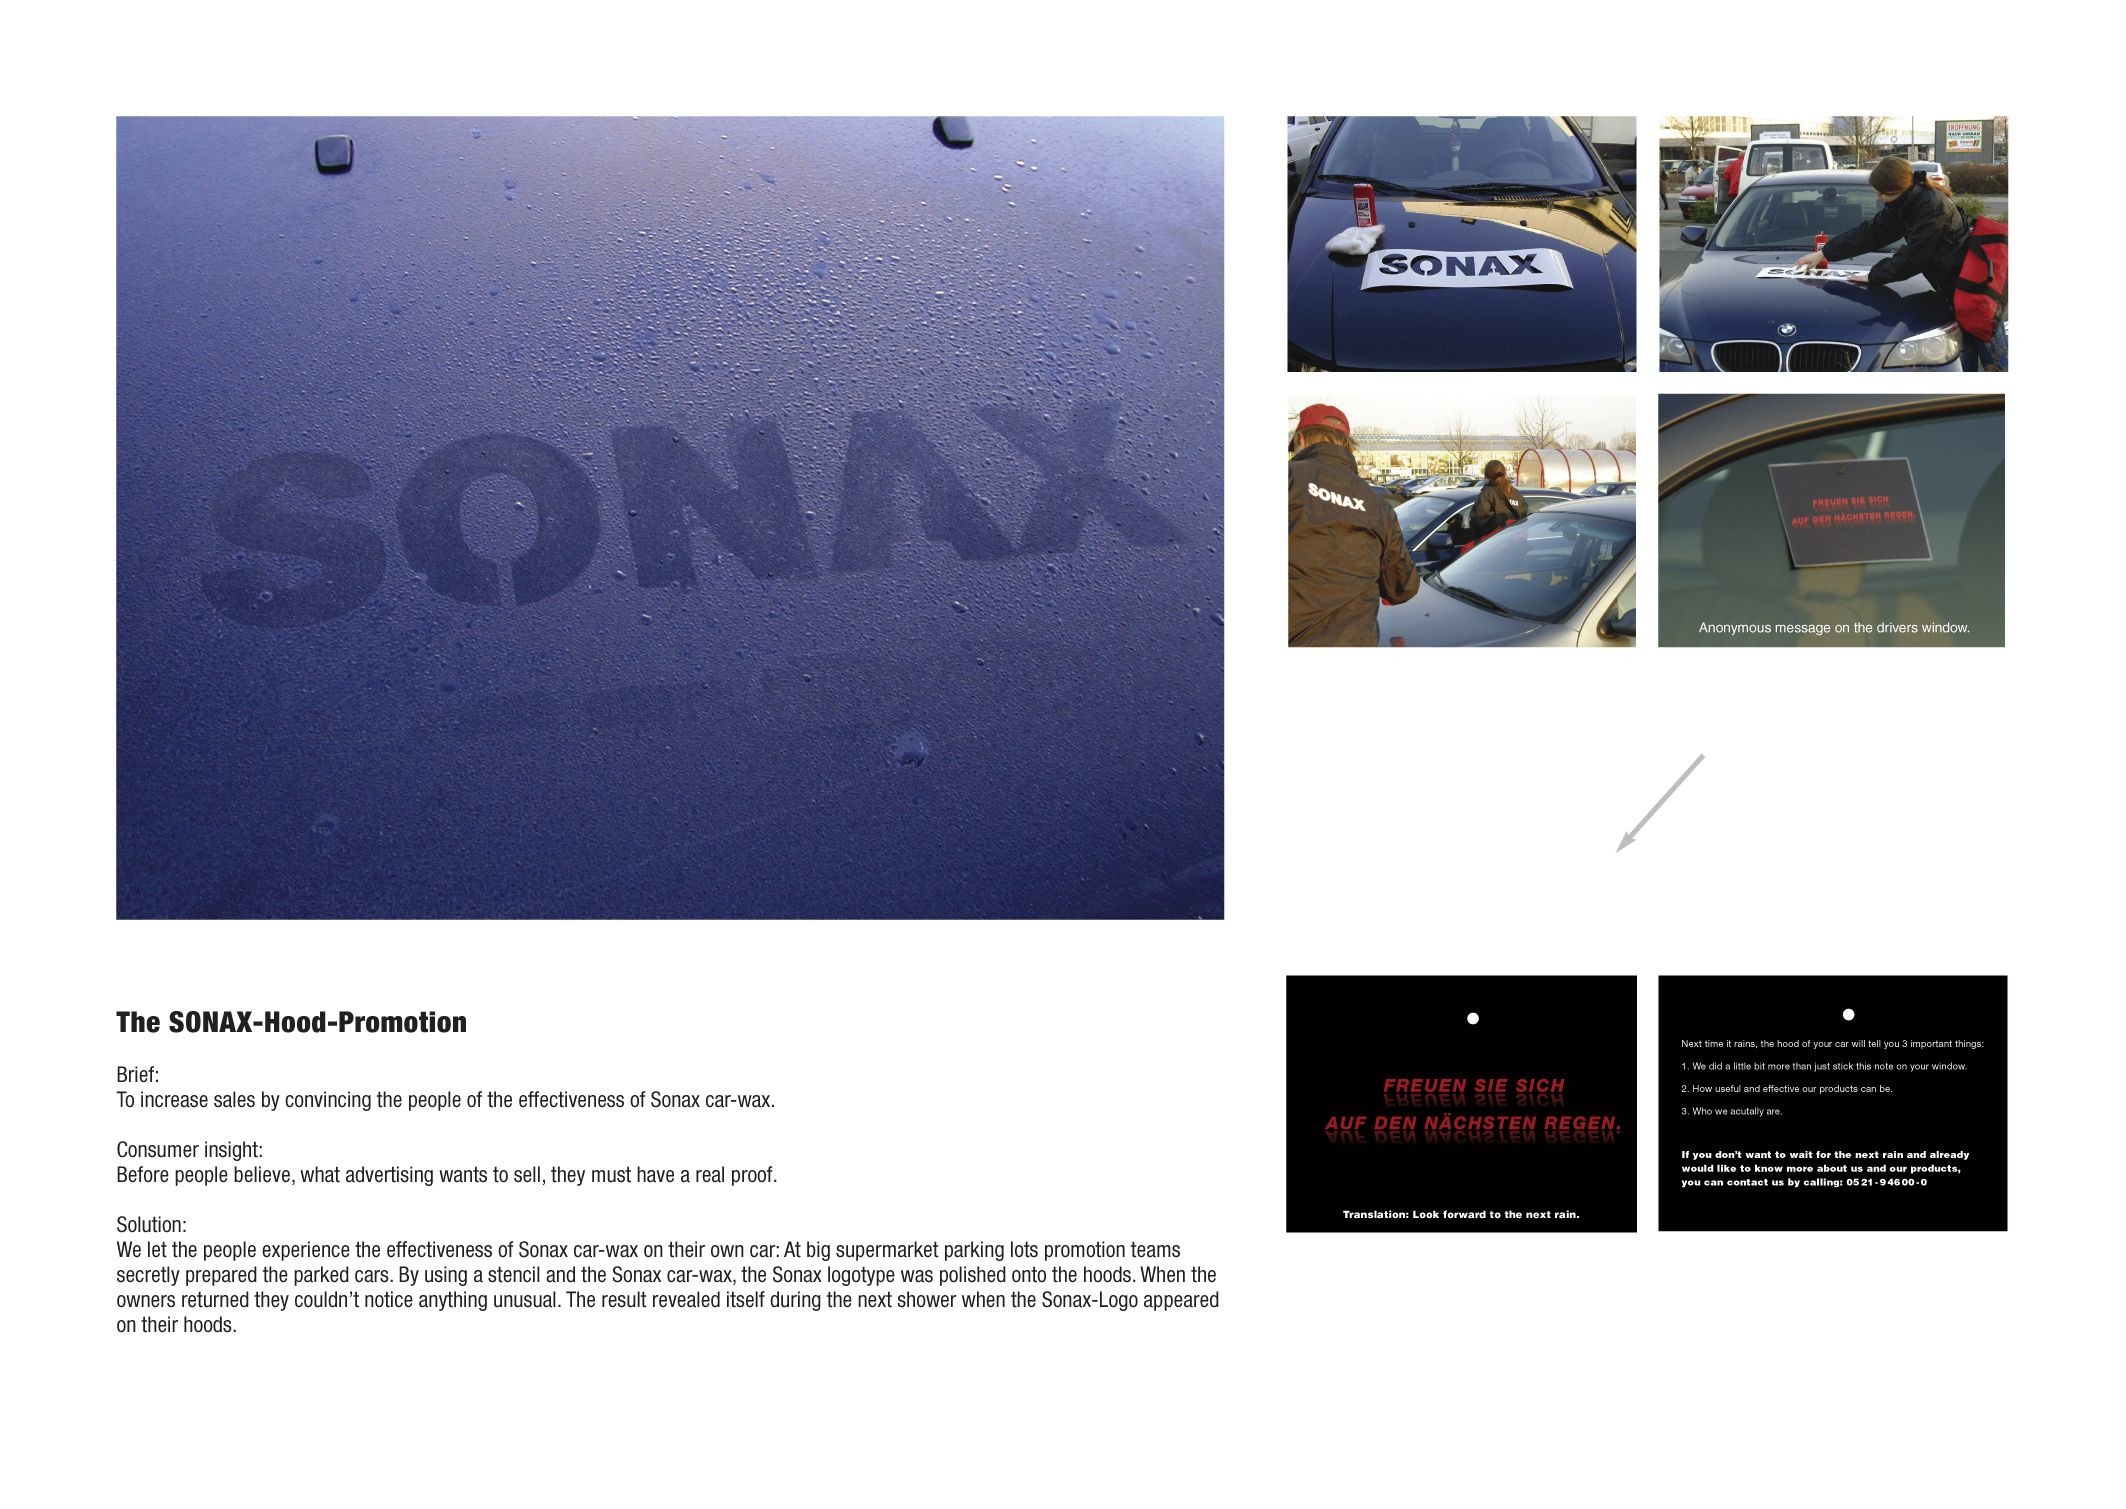 SONAX HARD CAR-WAX